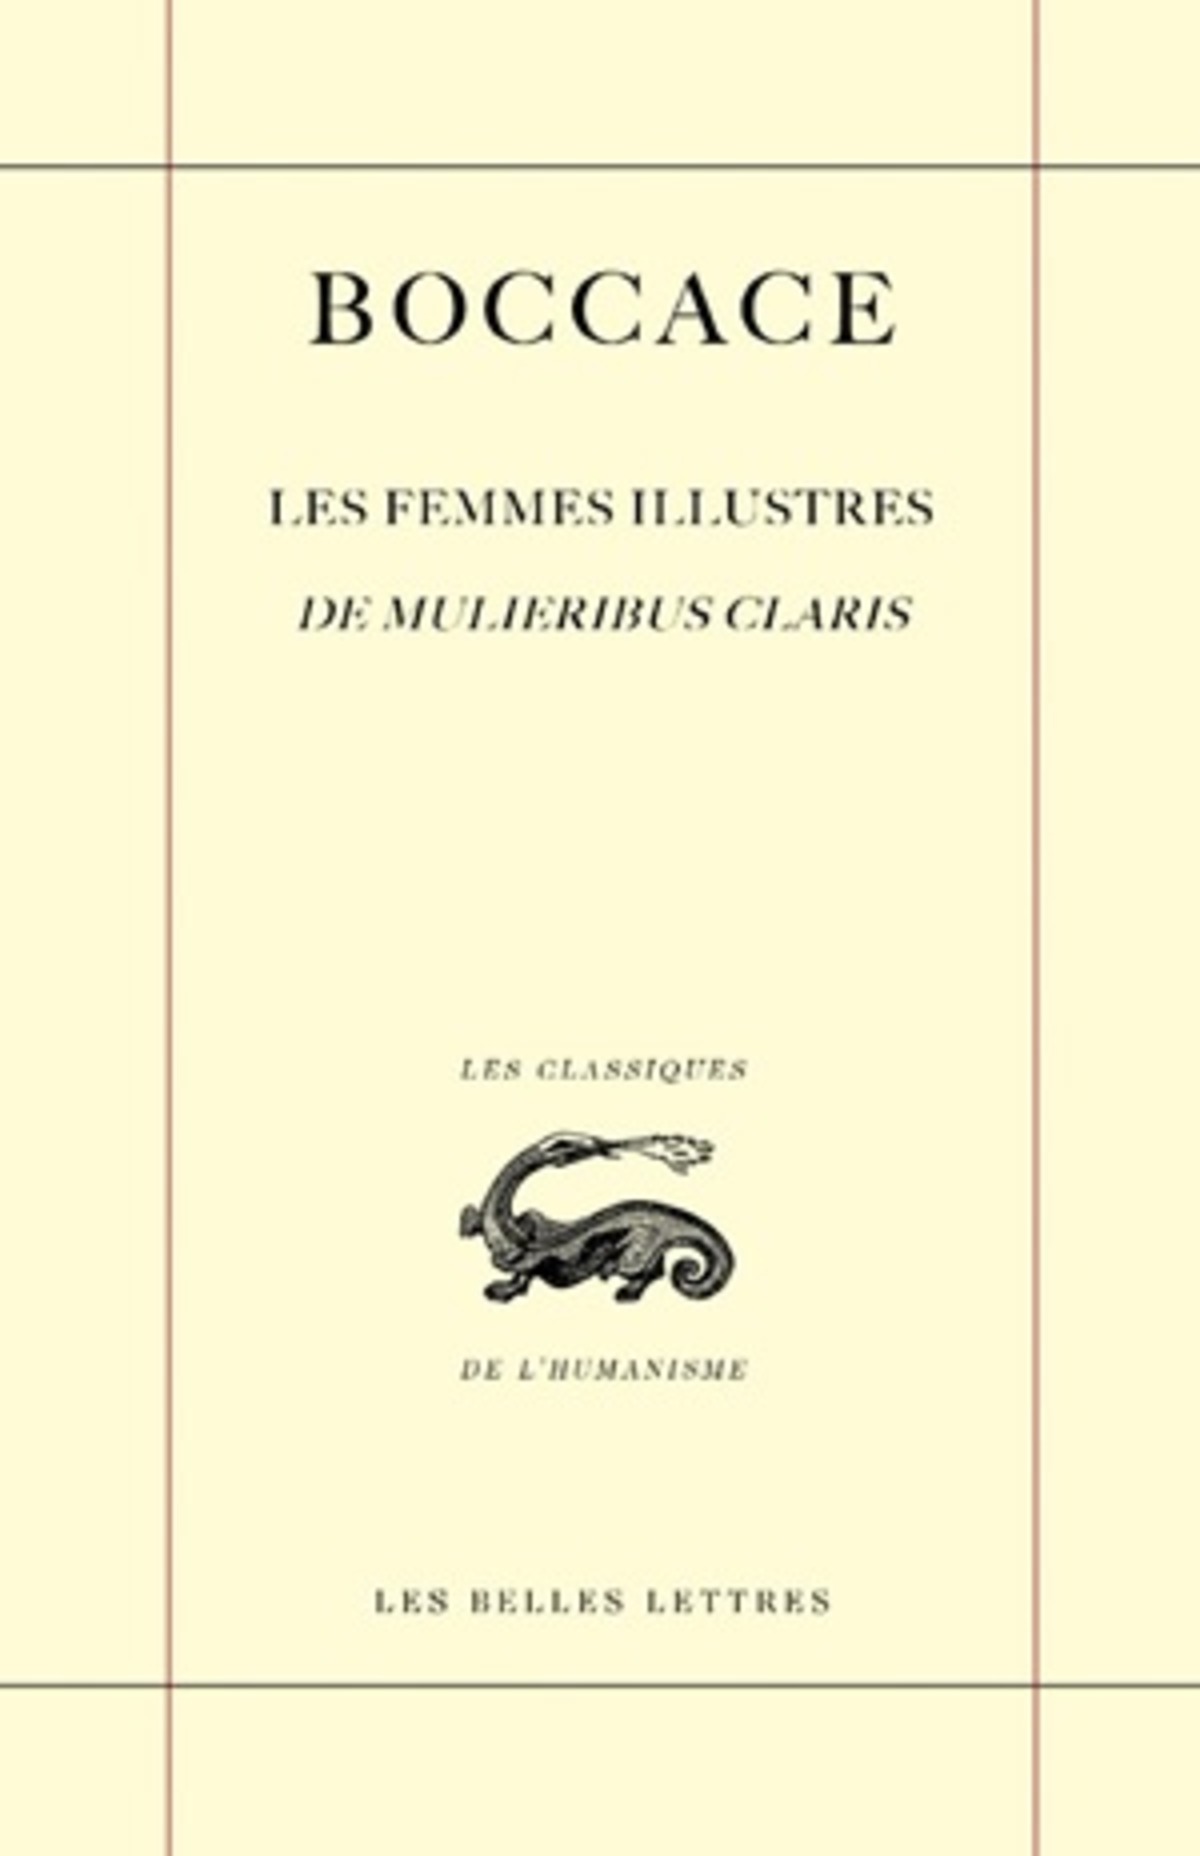 Les Femmes illustres / De Mulieribus claris